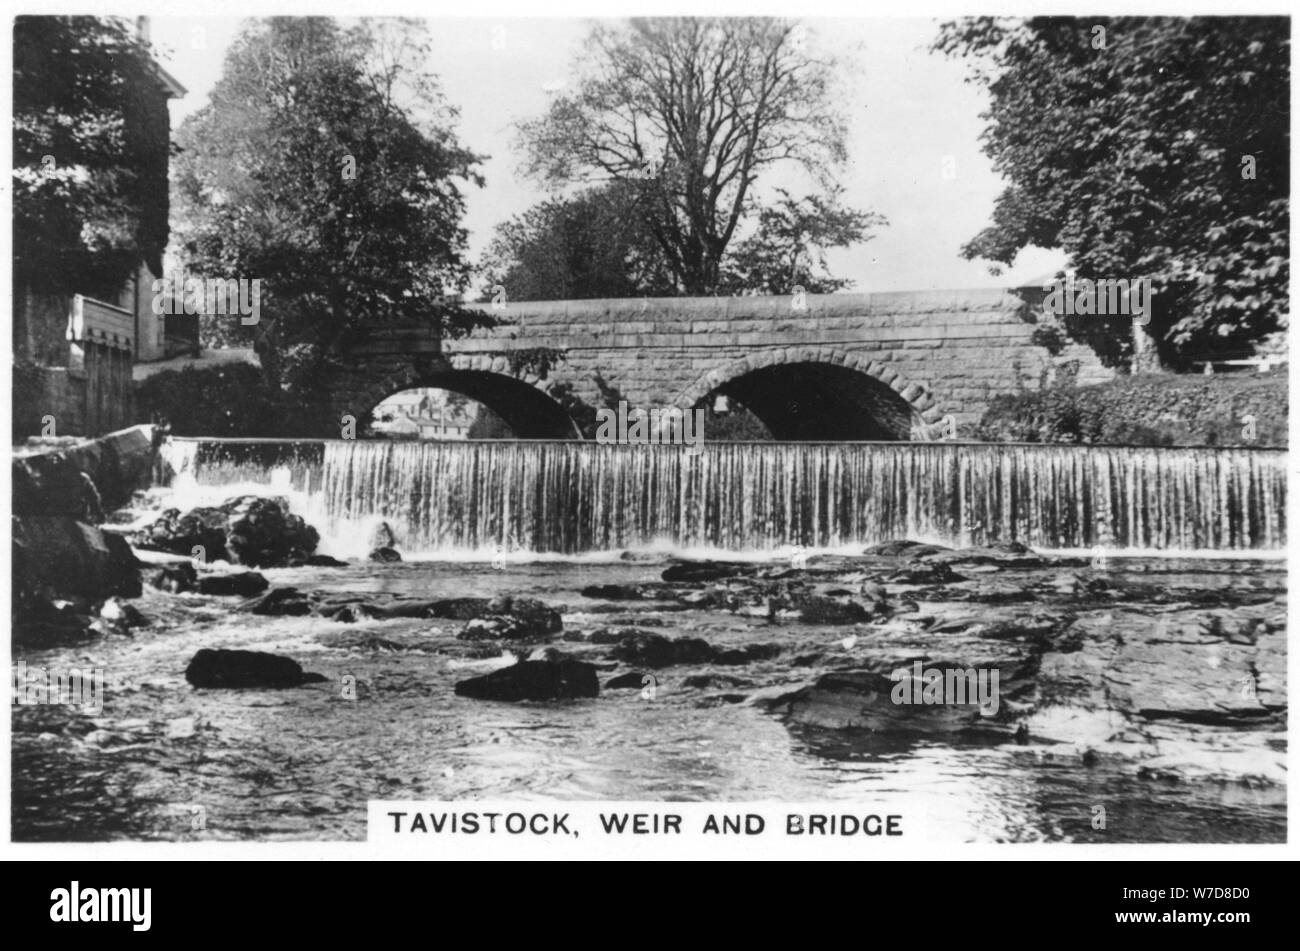 Tavistock, weir and bridge, 1937. Artist: Unknown Stock Photo